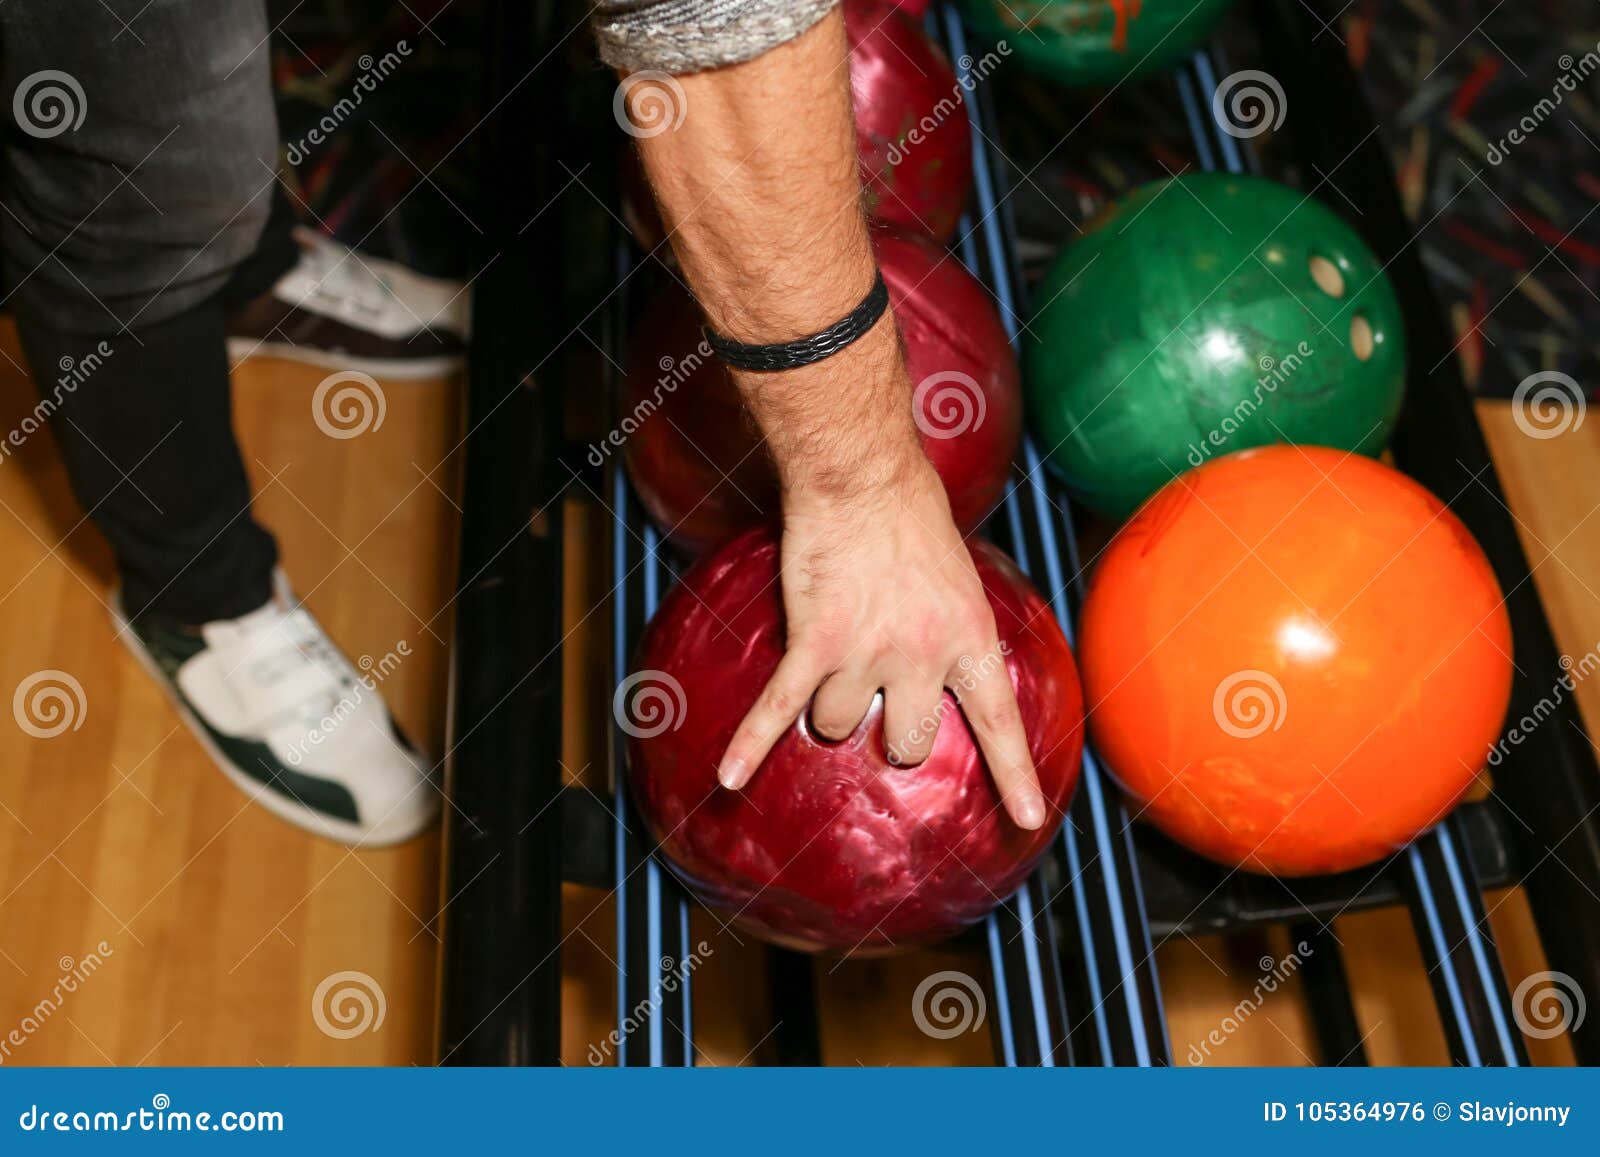 Пальцы в боулинге. Мяч для боулинга. Шар от боулинга в руке. Рука в шаре для боулинга. Цвет мячей в боулинге.